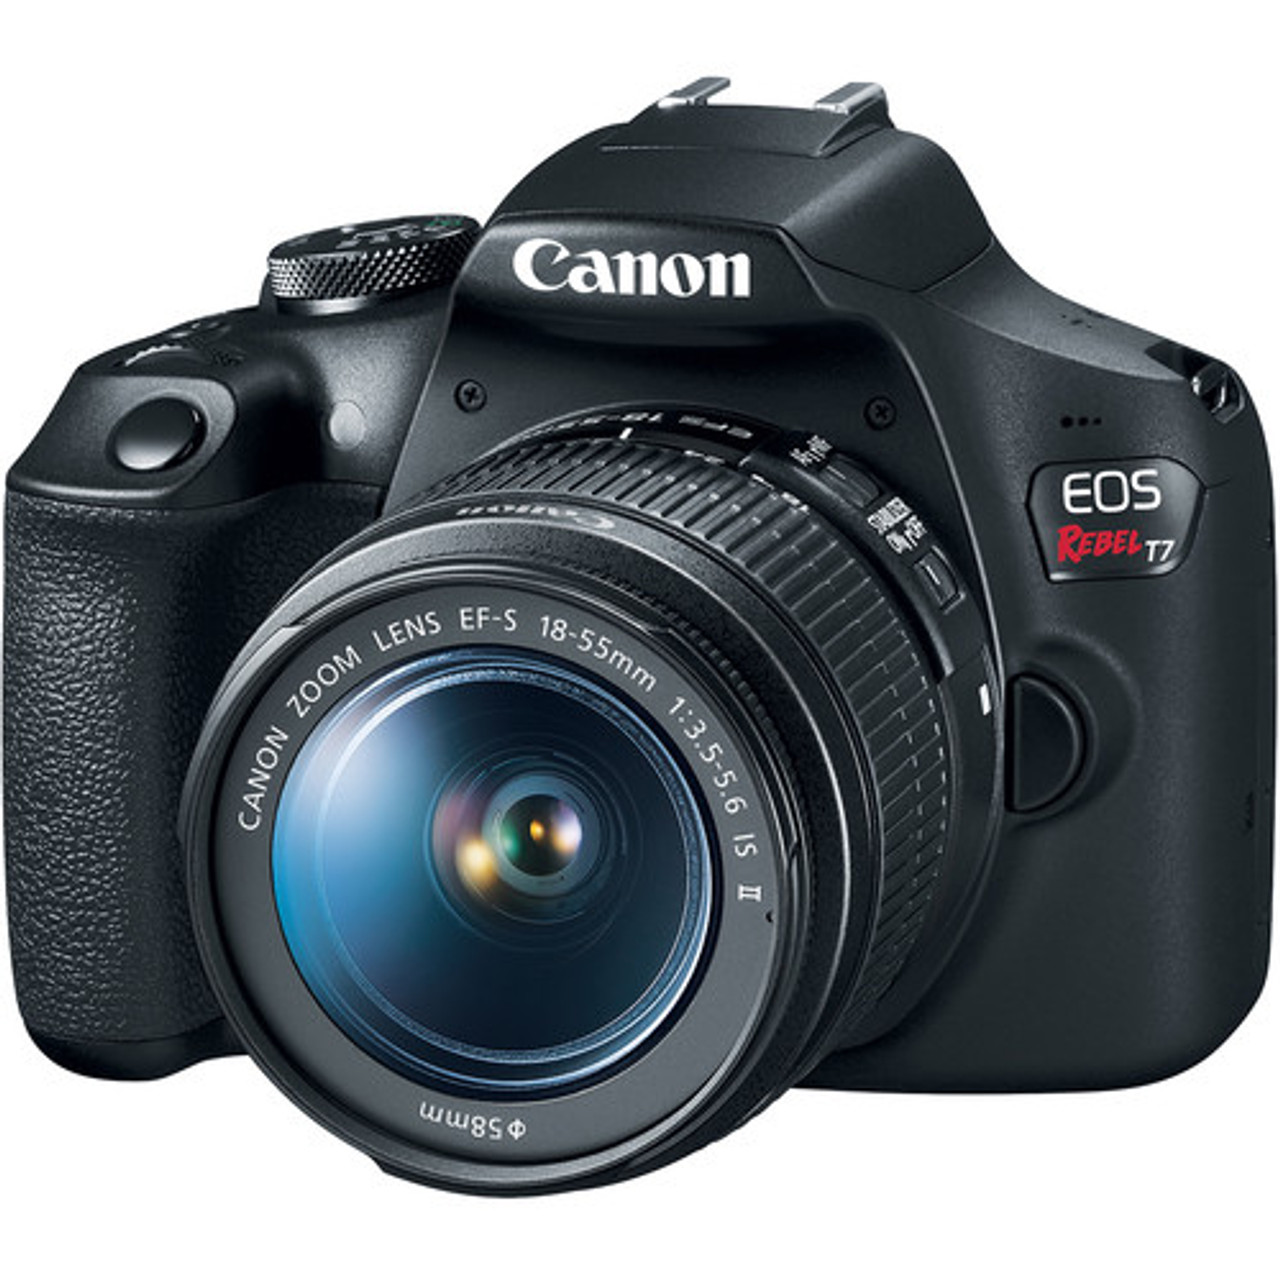 Descuidado Saliente Productos lácteos Canon EOS Rebel T7 DSLR Camera with 18-55mm Lens | Bedfords.com